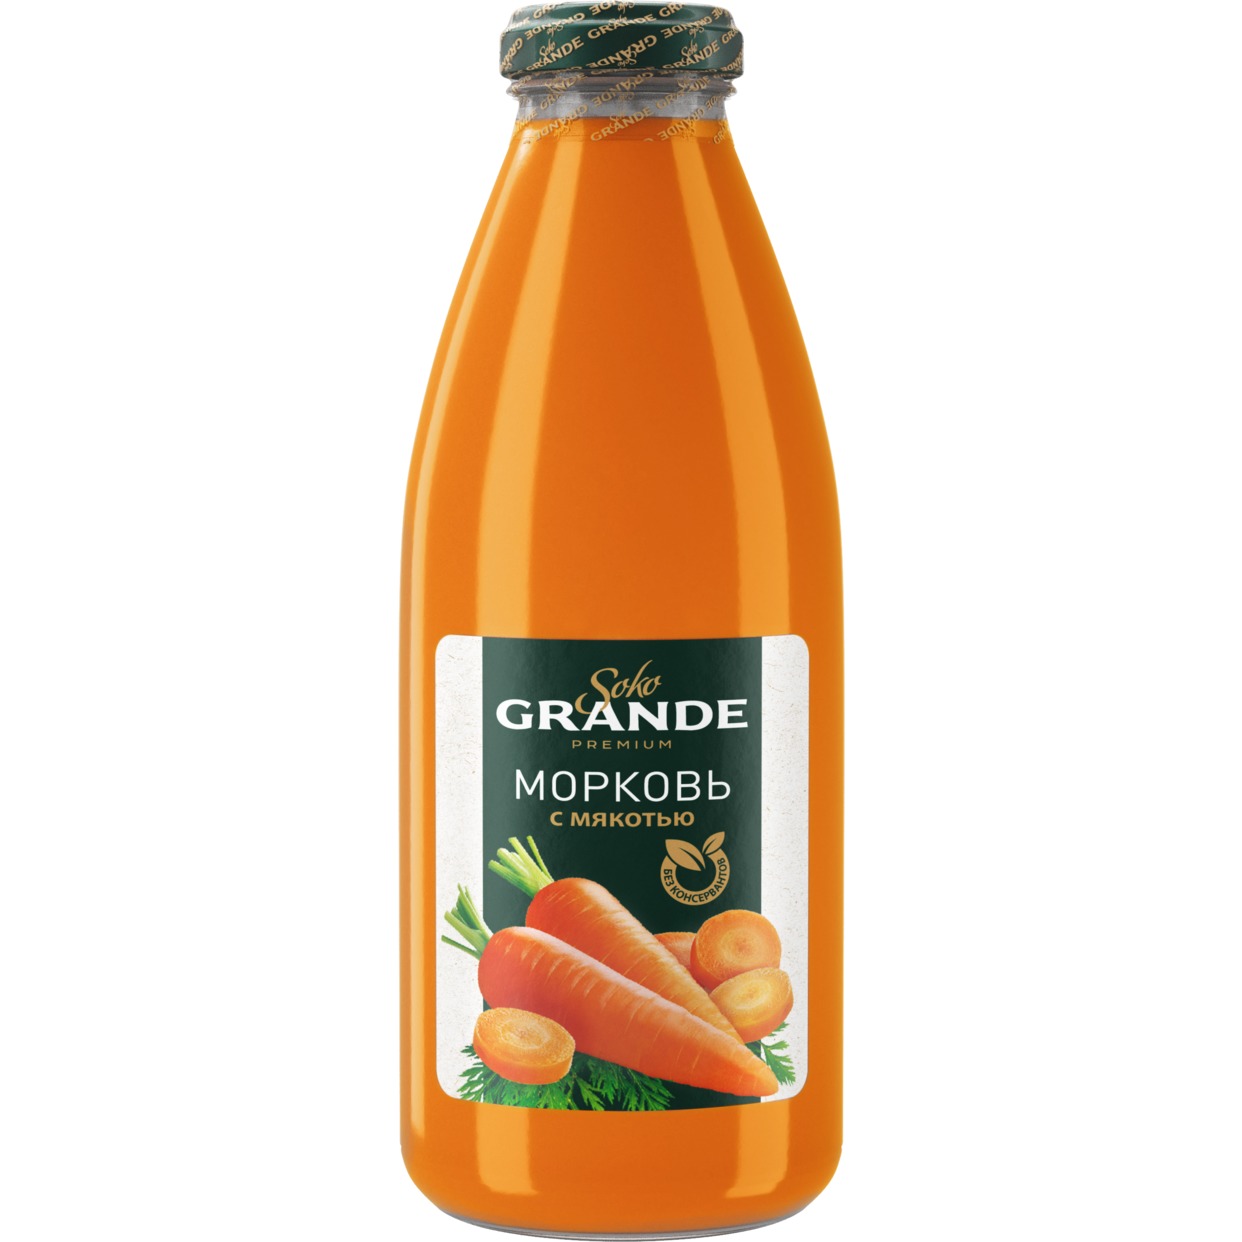 Нектар Soko Grande, морковь, 0,75 л по акции в Пятерочке